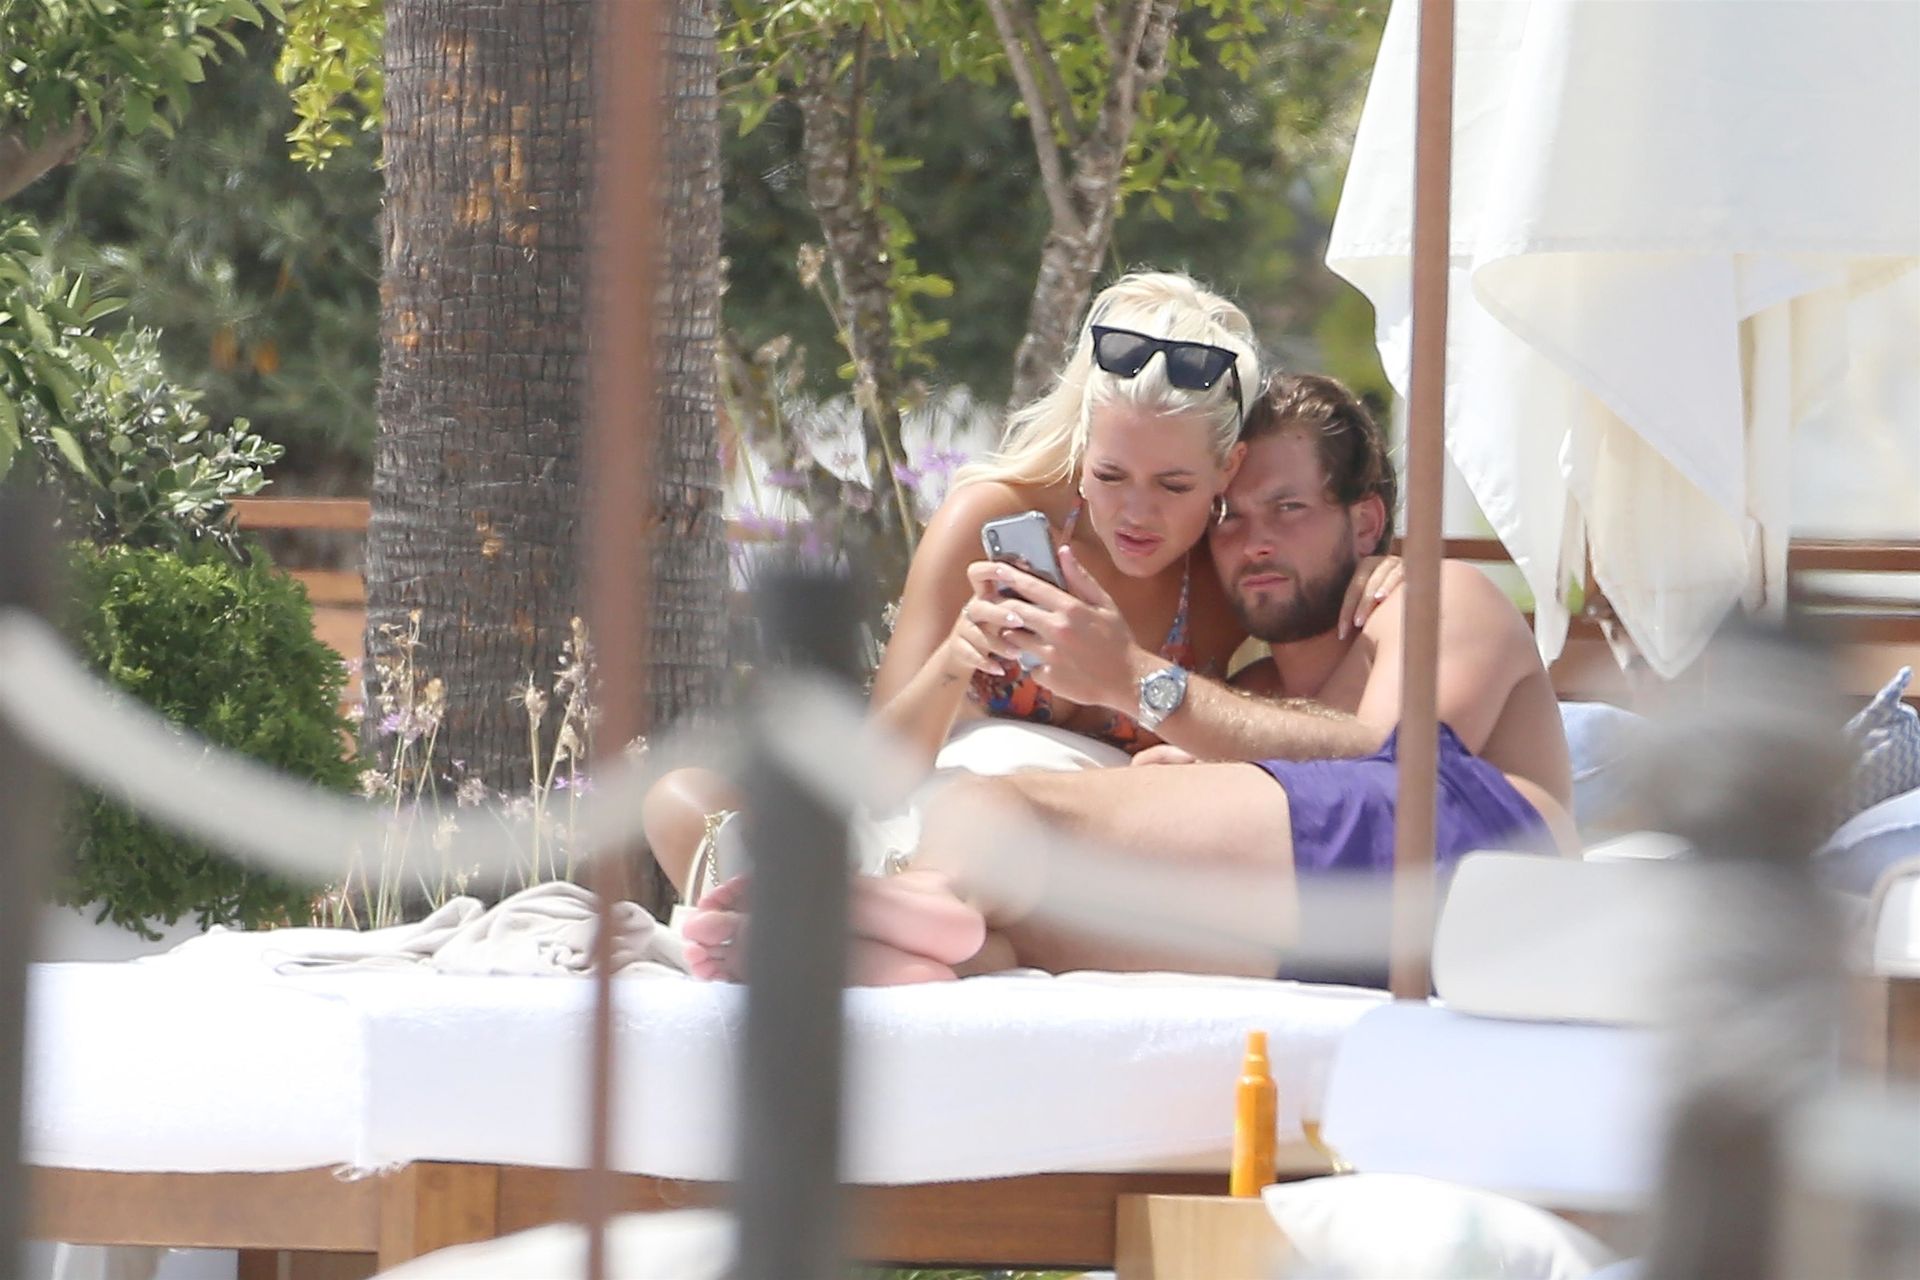 Lewis Burton & Lottie Tomlinson Enjoy Their Holiday in Ibiza (91 Photos)